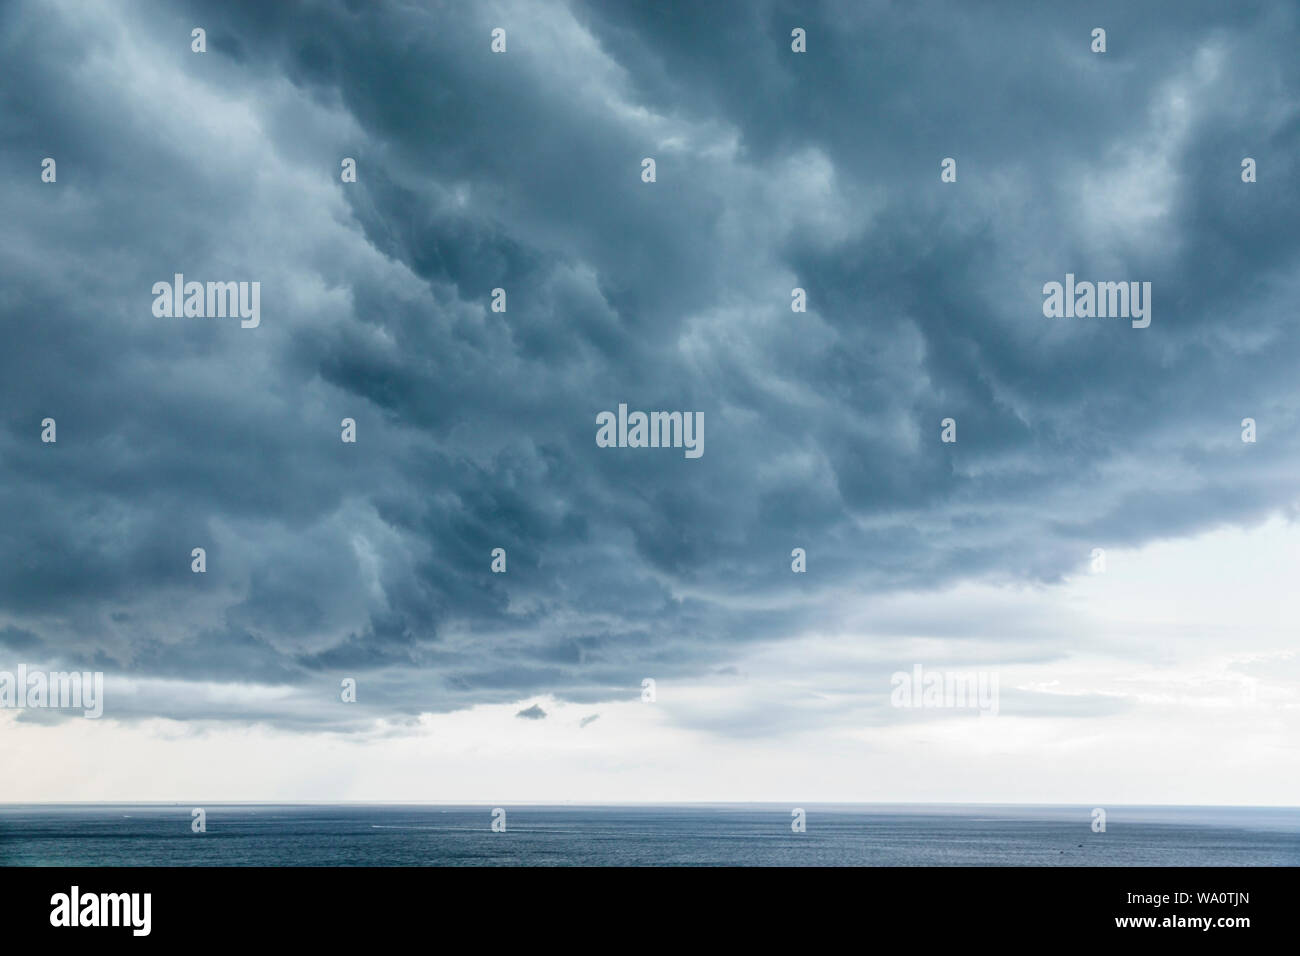 Miami Beach Florida, Oceano Atlantico, nuvole cielo meteo, nuvole tempesta raccolta, pioggia precipitazioni, FL190731029 Foto Stock